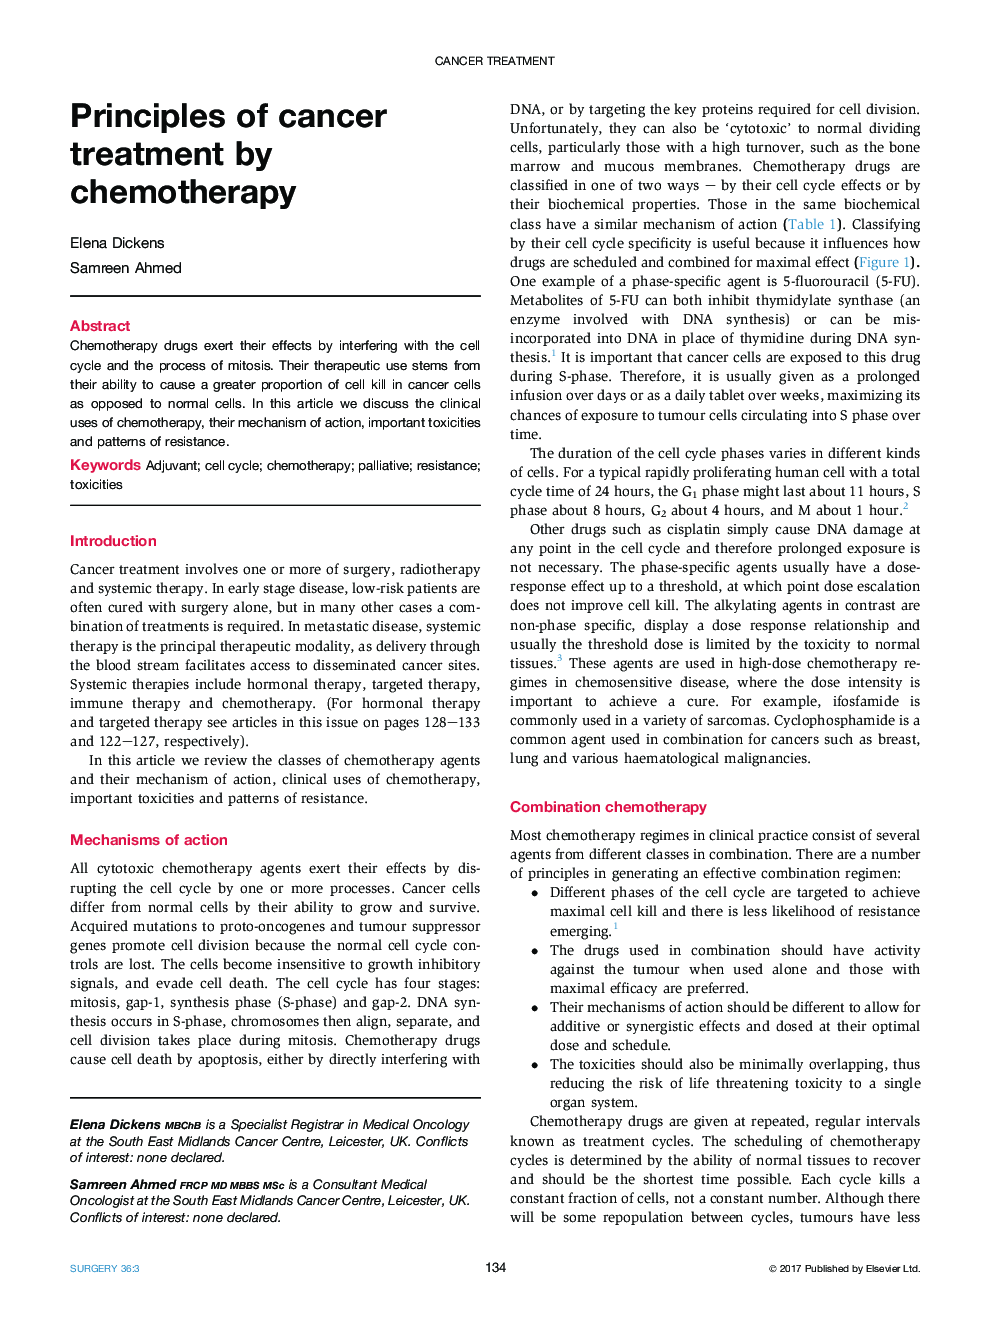 اصول درمان سرطان با شیمی درمانی 